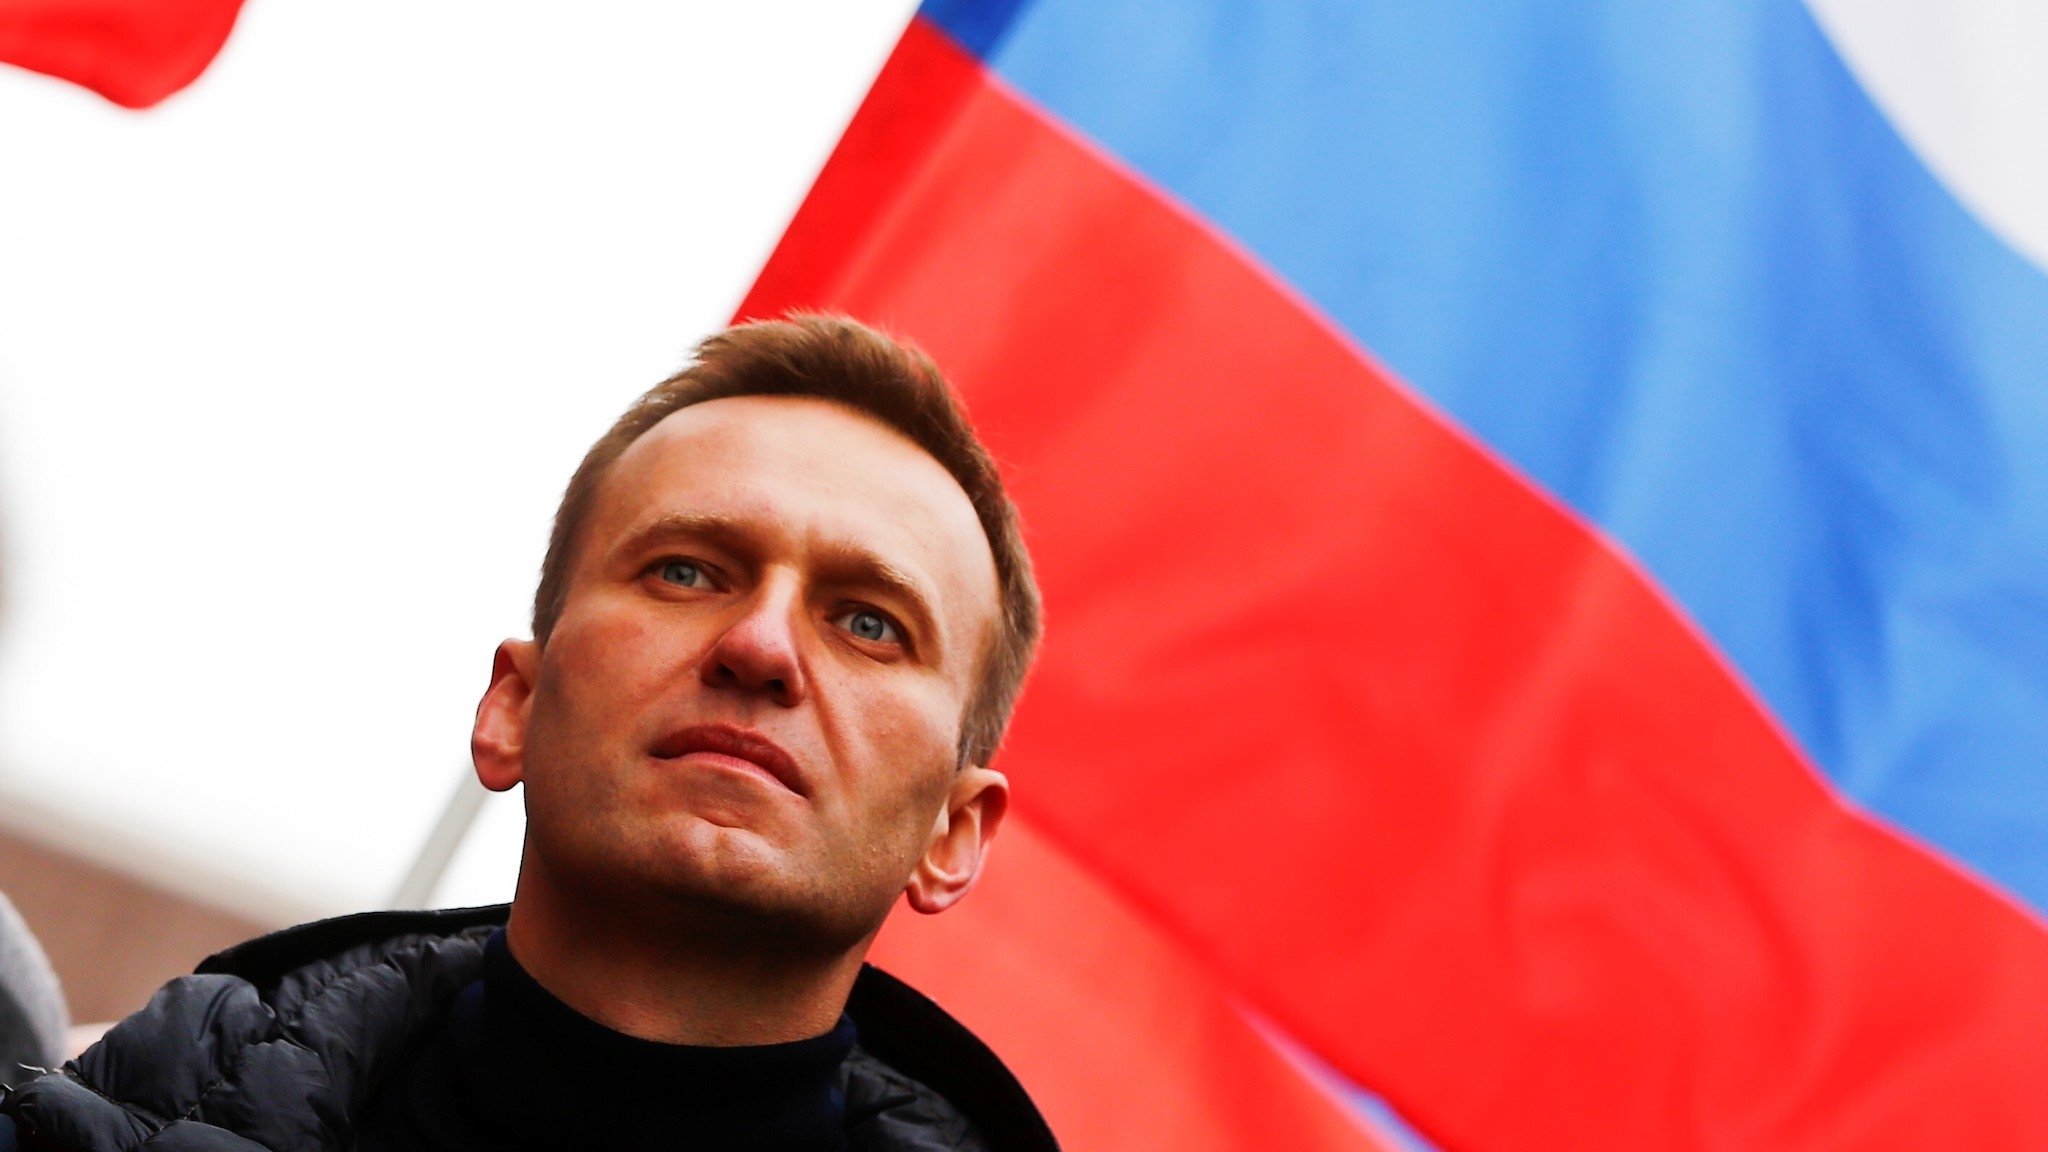 Alexei Nawalny